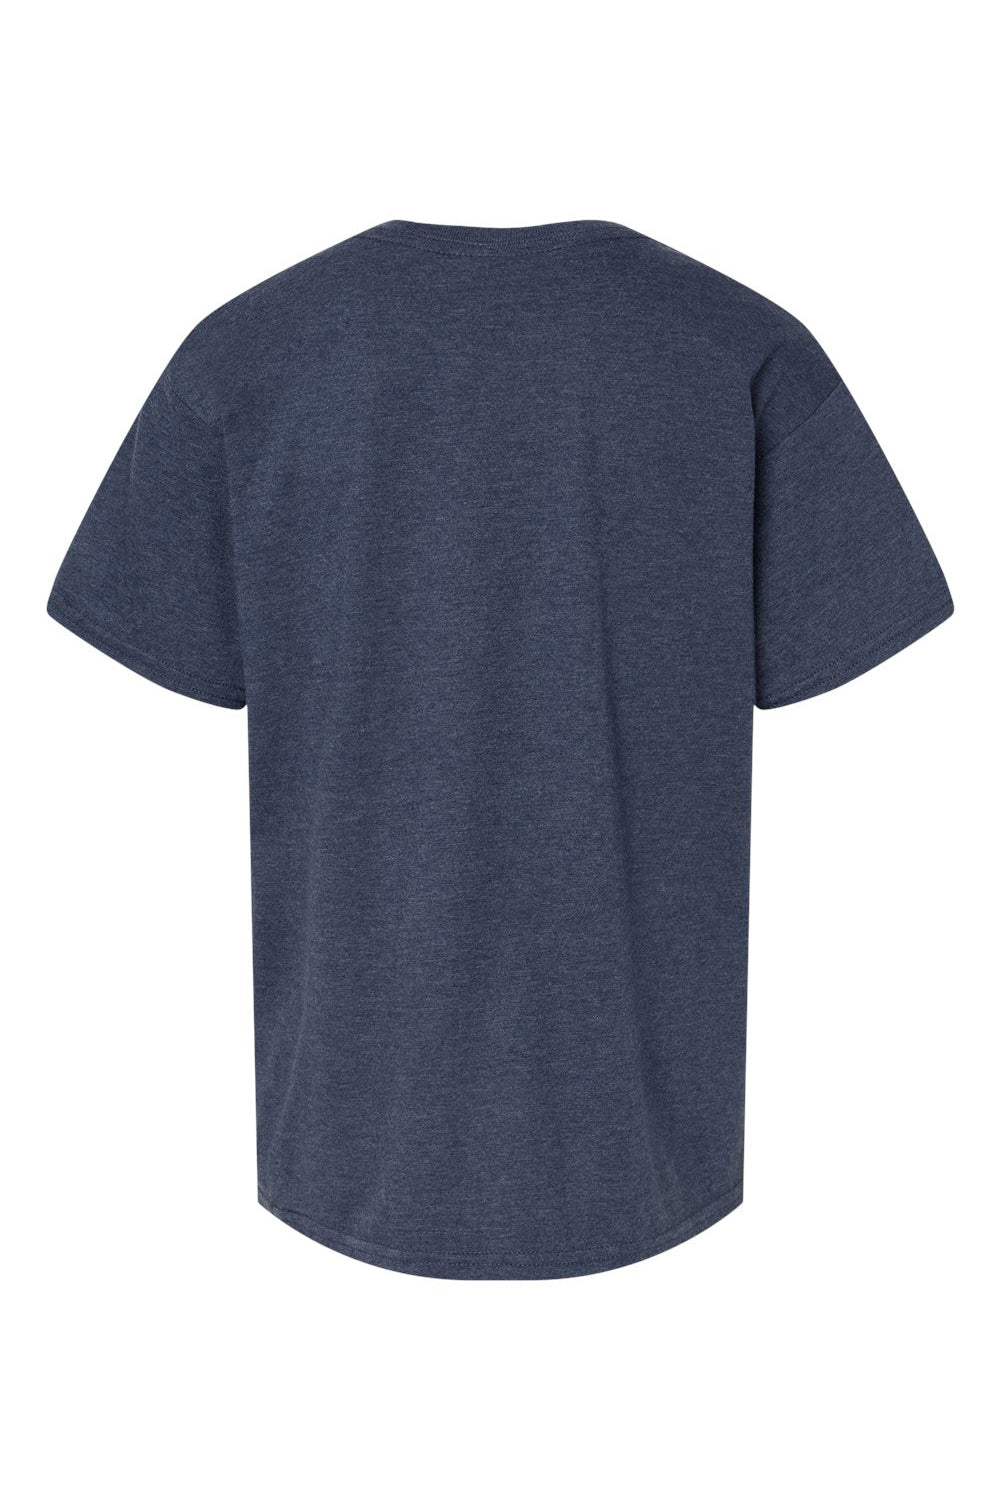 Gildan 67000B Youth Softstyle CVC Short Sleeve Crewneck T-Shirt Navy Blue Mist Flat Back